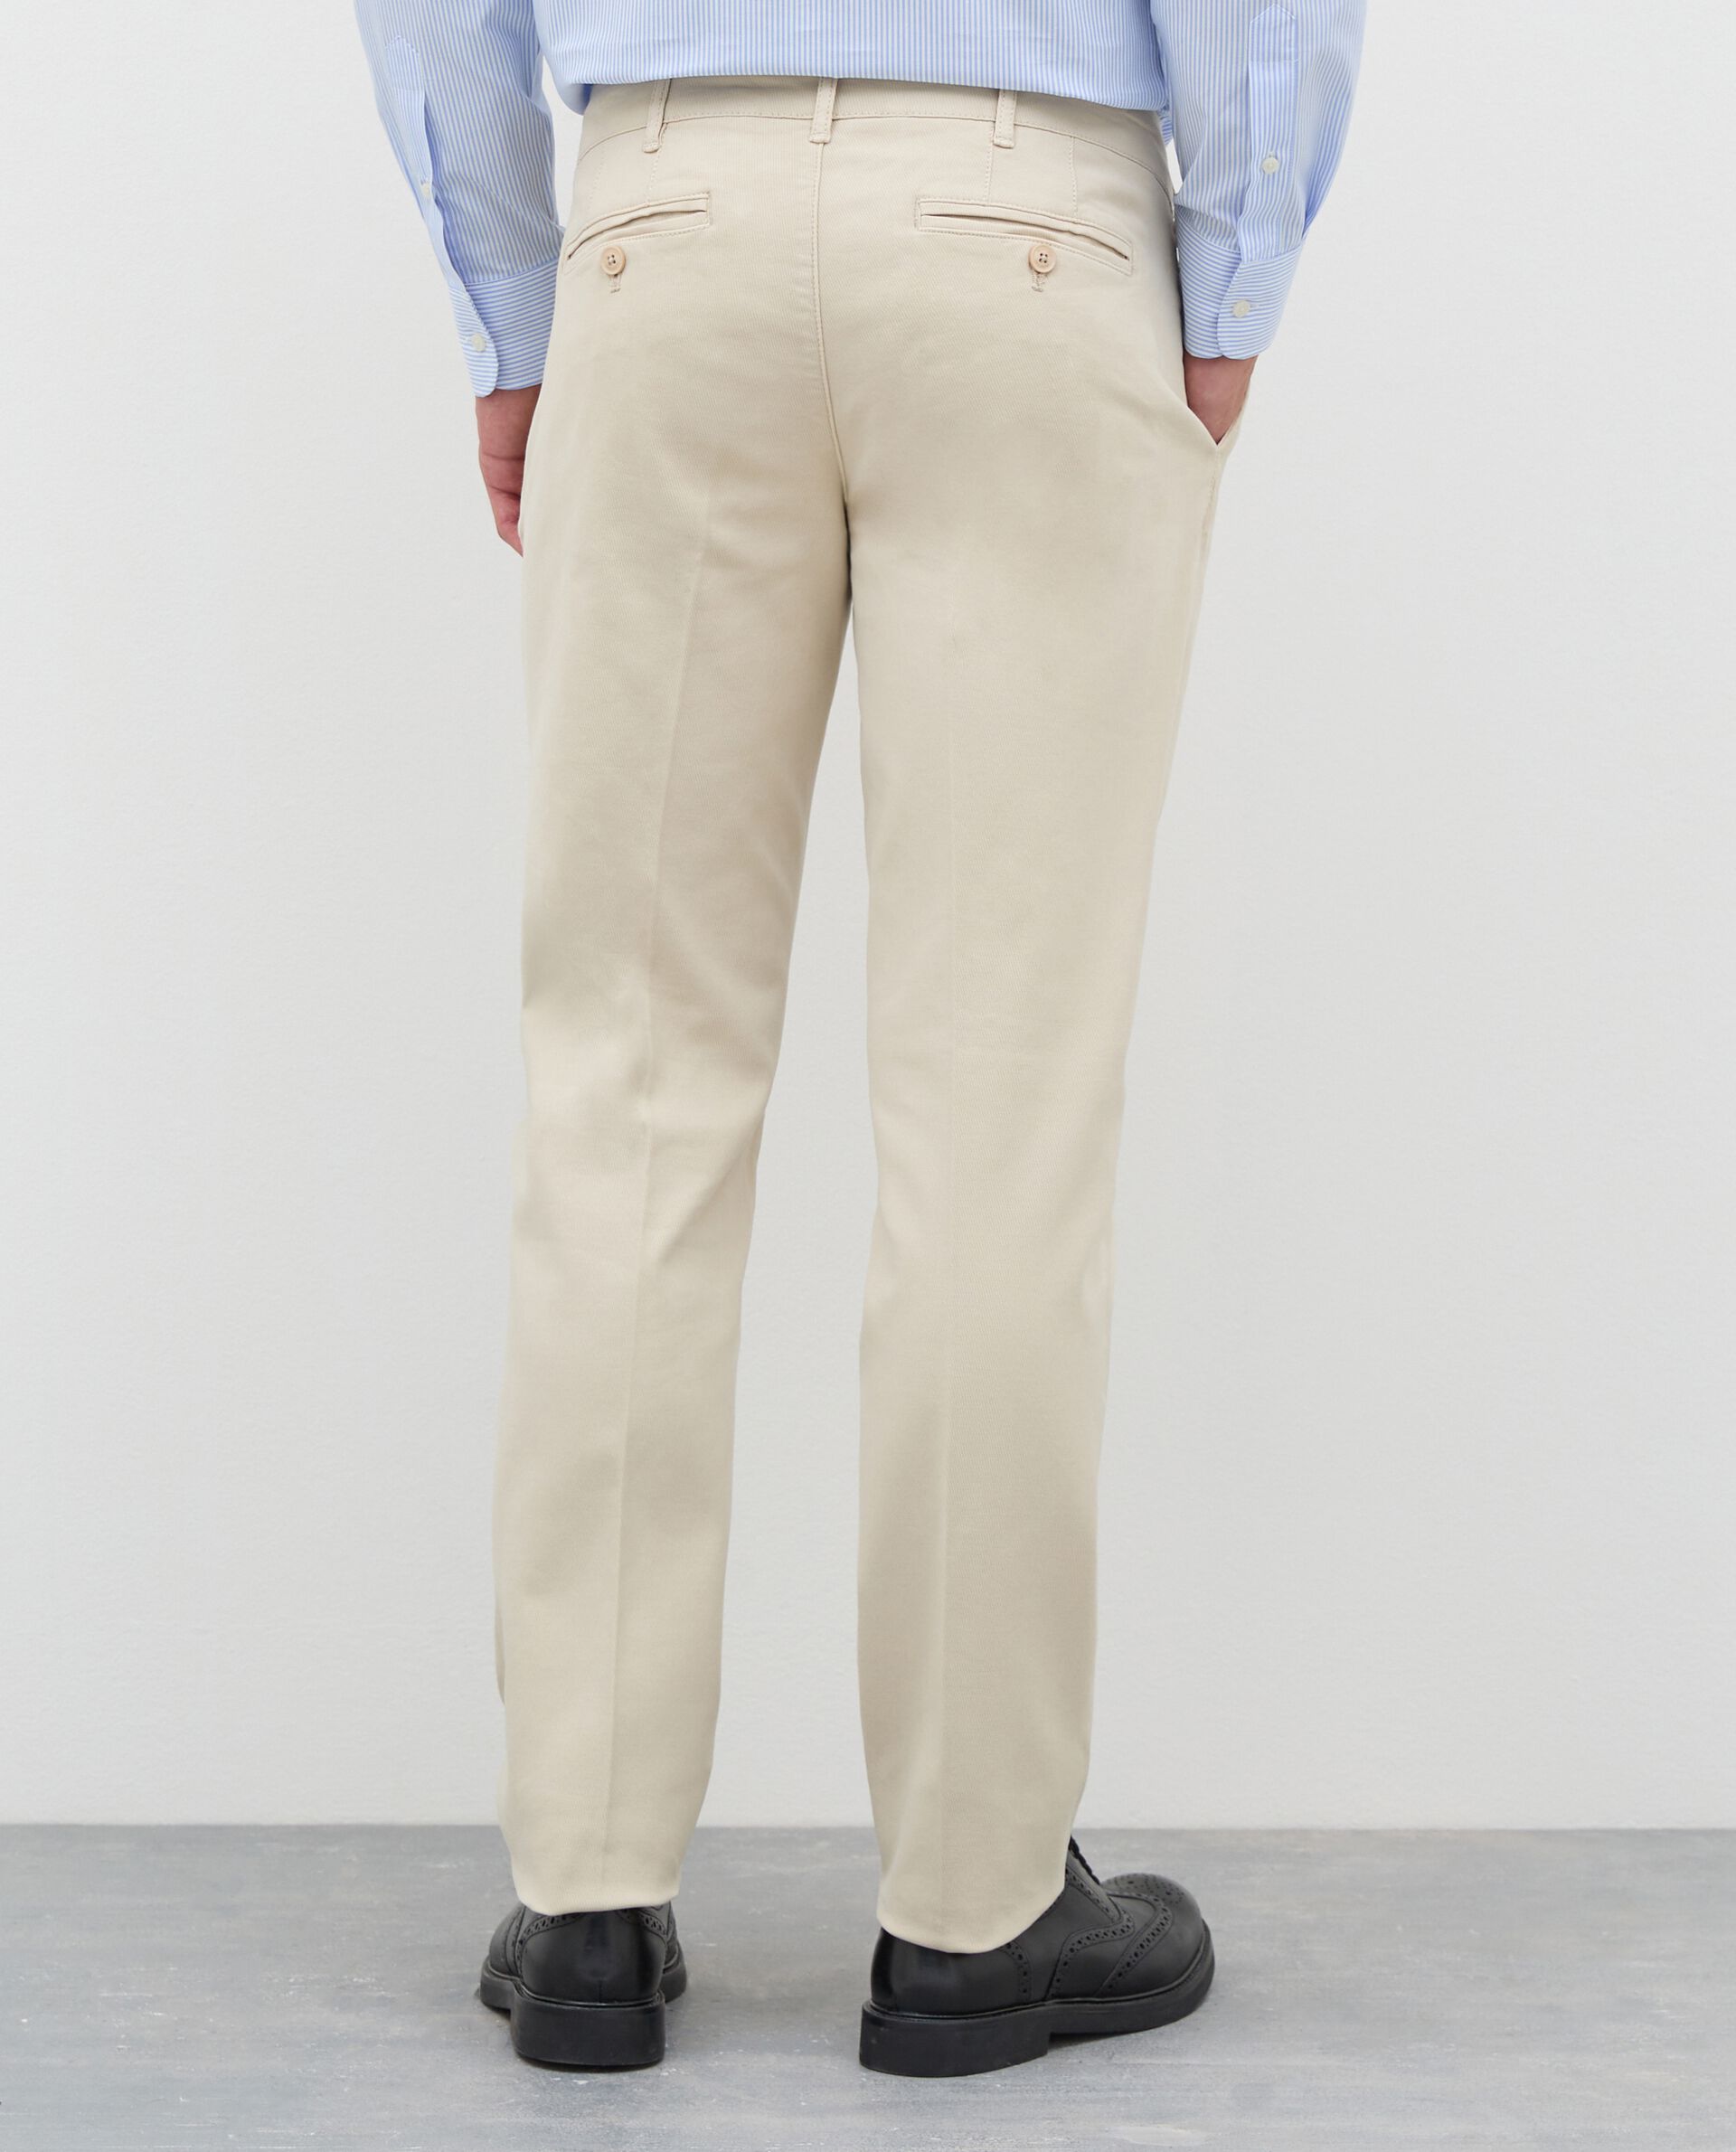 Pantaloni chino Rumford in tricotina twill di cotone uomo